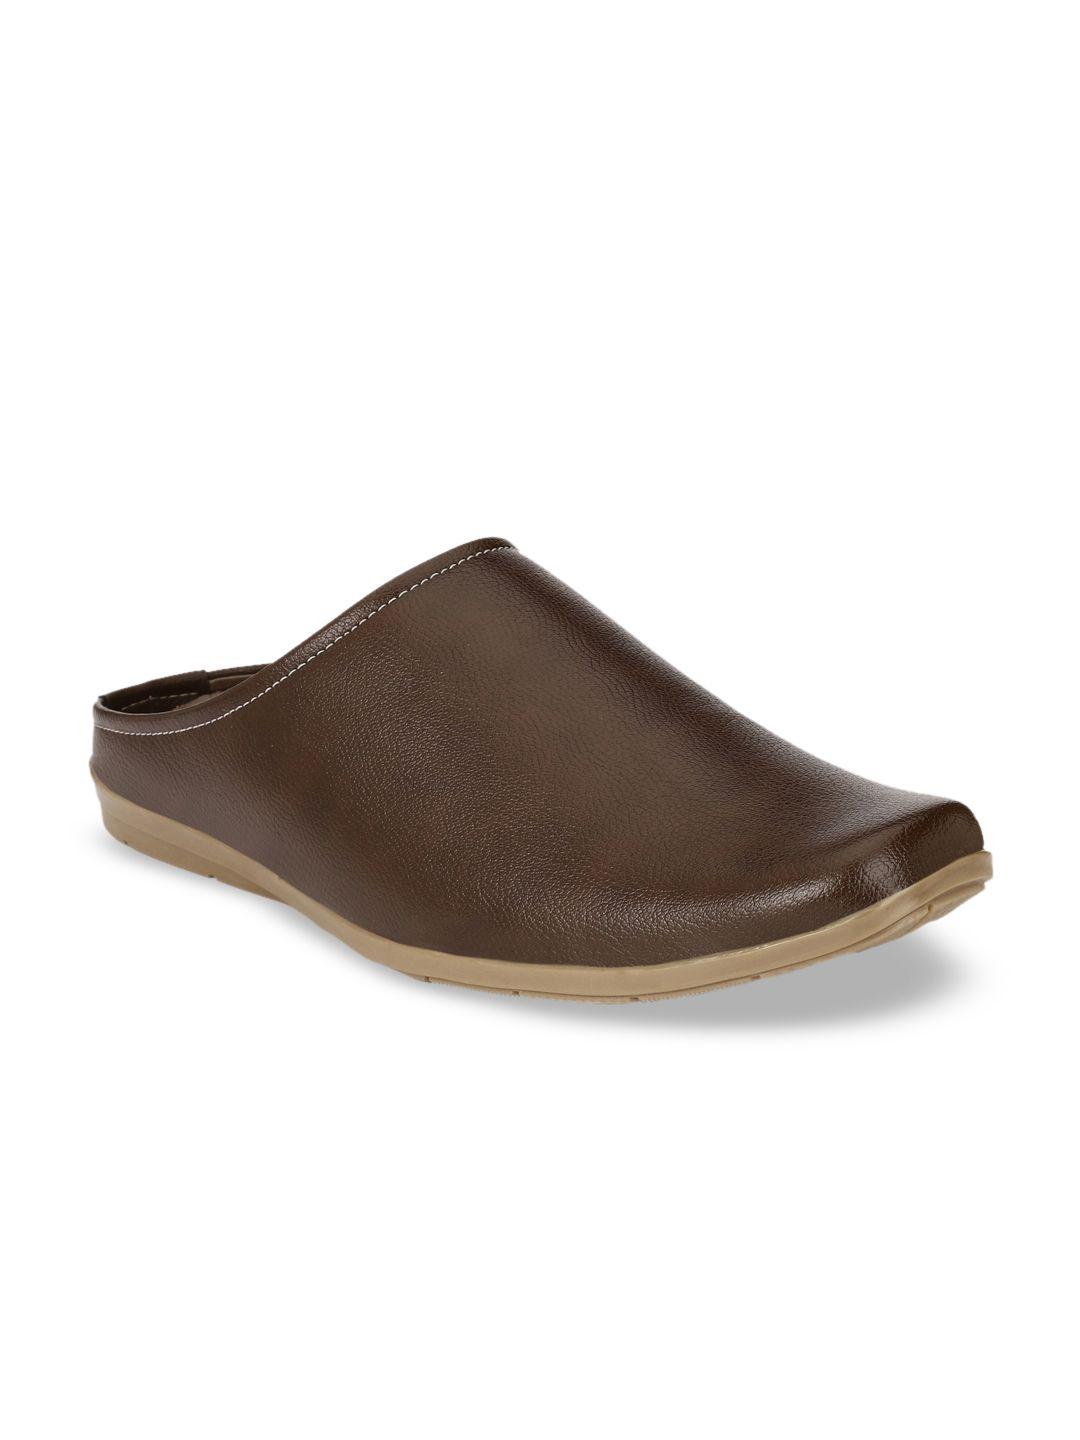 john-karsun-men-brown-sandals